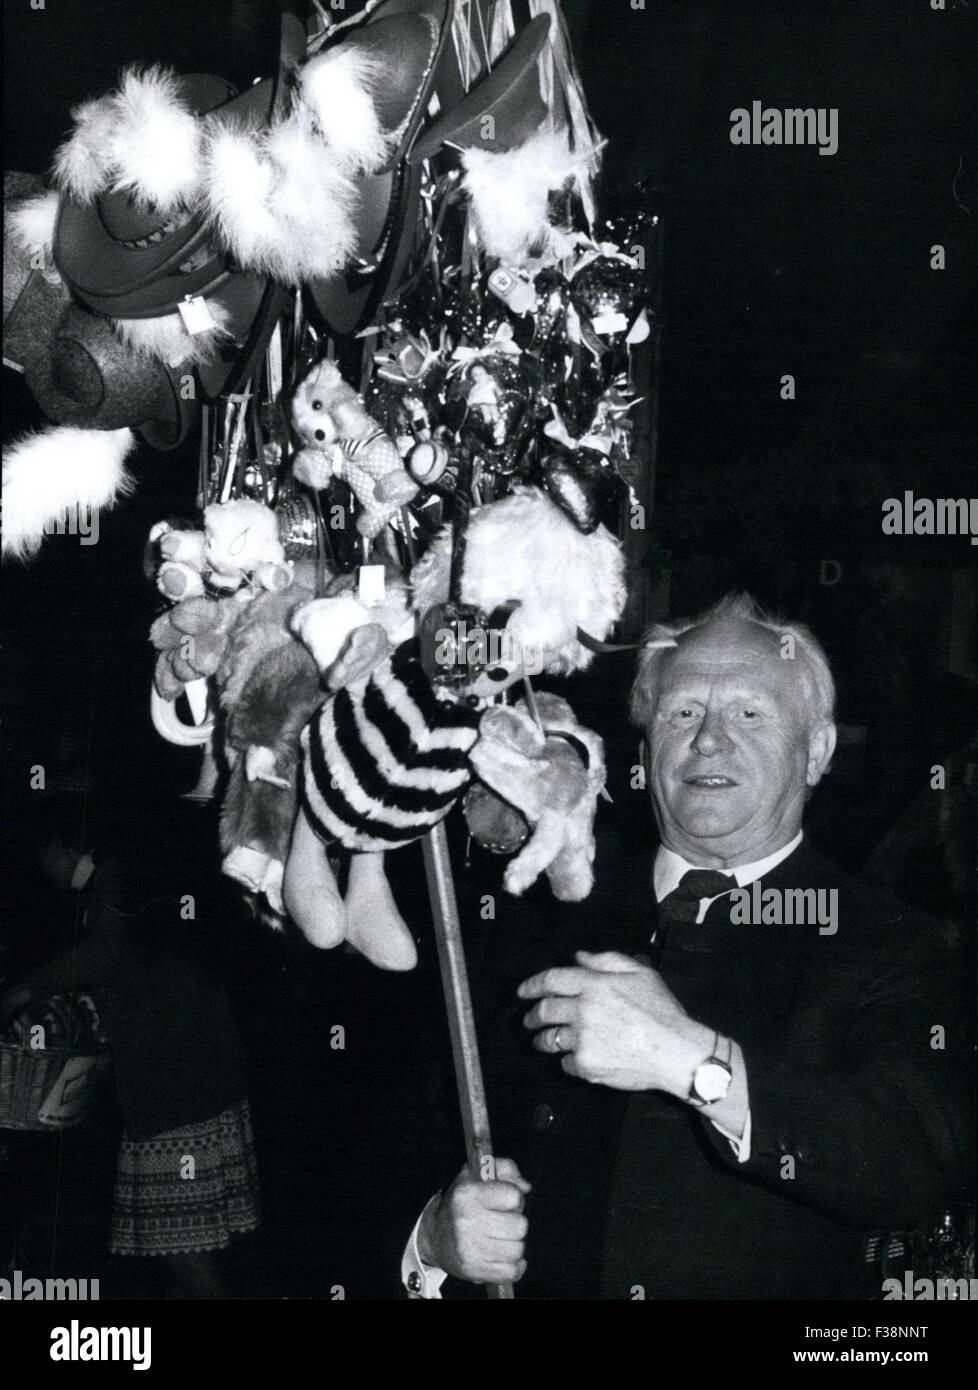 1977 - "Oktoberfest" 1977 In München '': im Mittelpunkt des Interesses. für Jung und alt, und auch für prominente Menschen ist in diesen Tagen das "Oktoberfest" in München, die bis zum 2. Oktober dauern wird. Auch Gert Frobe (George Froebe) der Schauspieler, der als "Goldfinger" (007-Film), in der ganzen Welt berühmt wurde besucht das größte Publikumsfestival der Welt-- und nur so zum Spaß versucht er sich als Verkäufer für Souvenirs. Natürlich fand den prominenten Mann einen großen Markt für die Herzen der Schokolade, die typisch bayerische Hüte, die kleinen Tiere aus Textil und andere Souvenirs. (Kredit-Bild: © K Stockfoto